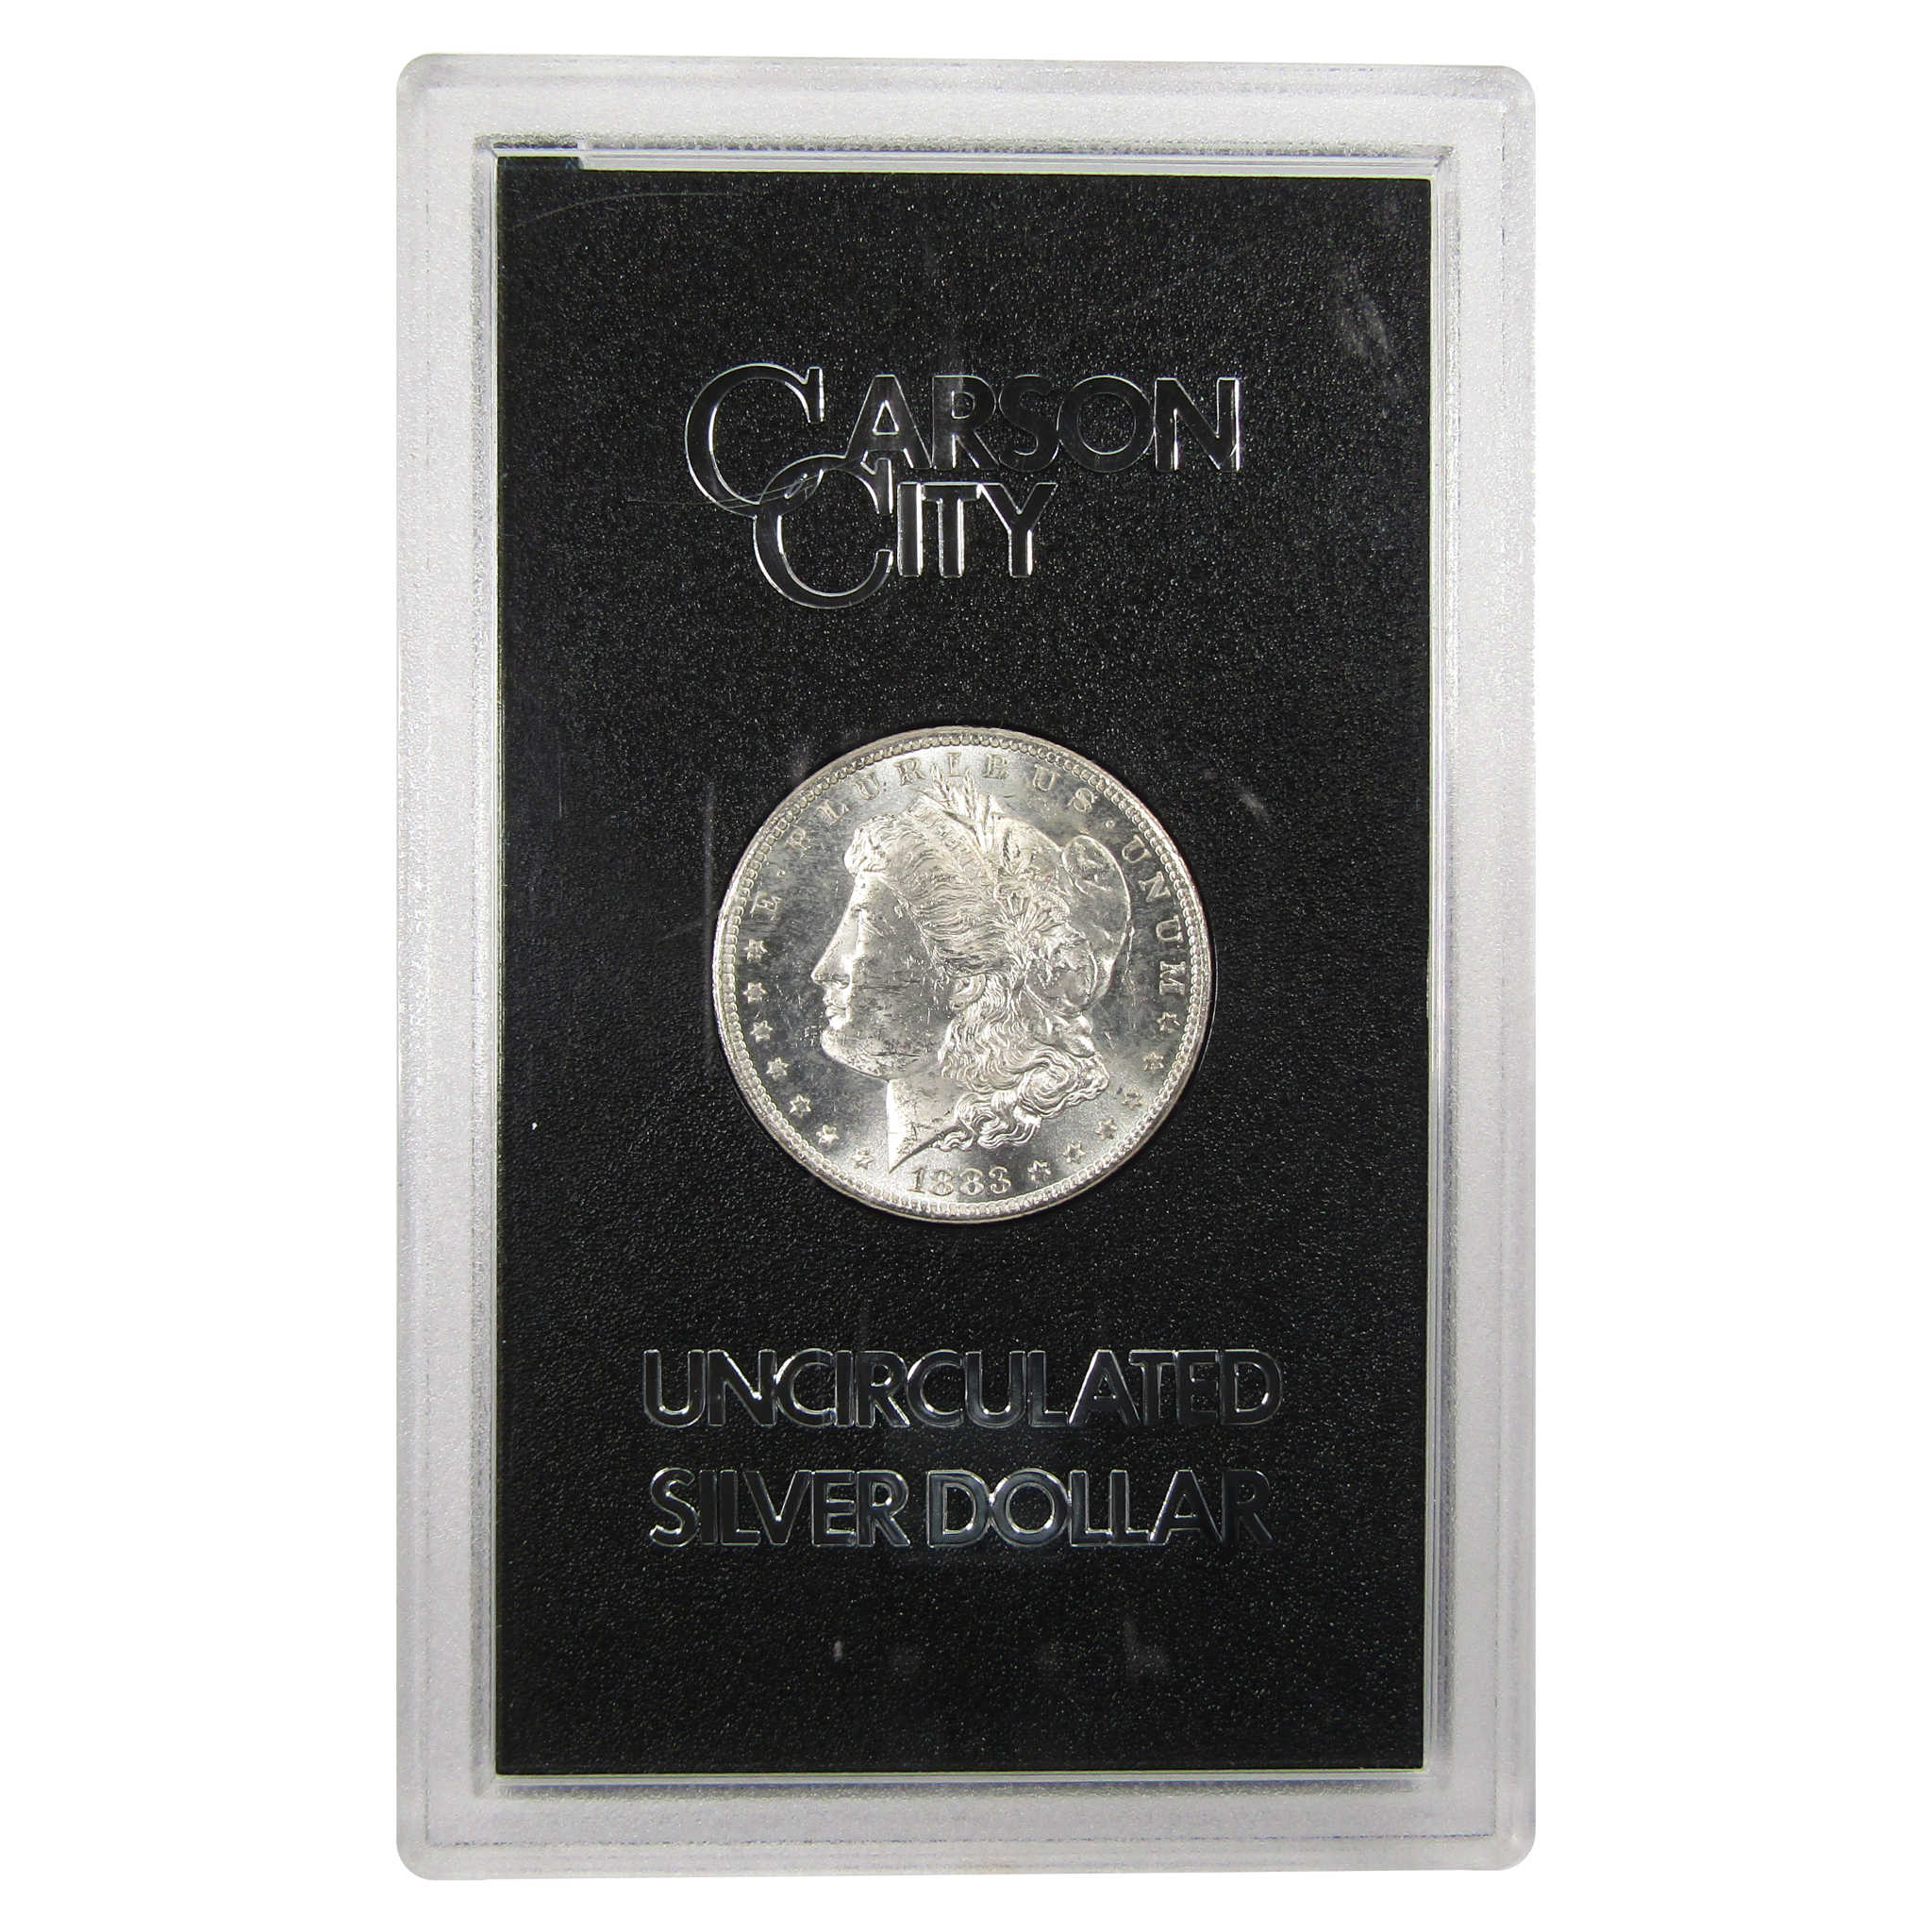 1883 CC GSA Morgan Dollar BU Uncirculated Silver $1 Coin SKU:I9861 - Morgan coin - Morgan silver dollar - Morgan silver dollar for sale - Profile Coins &amp; Collectibles